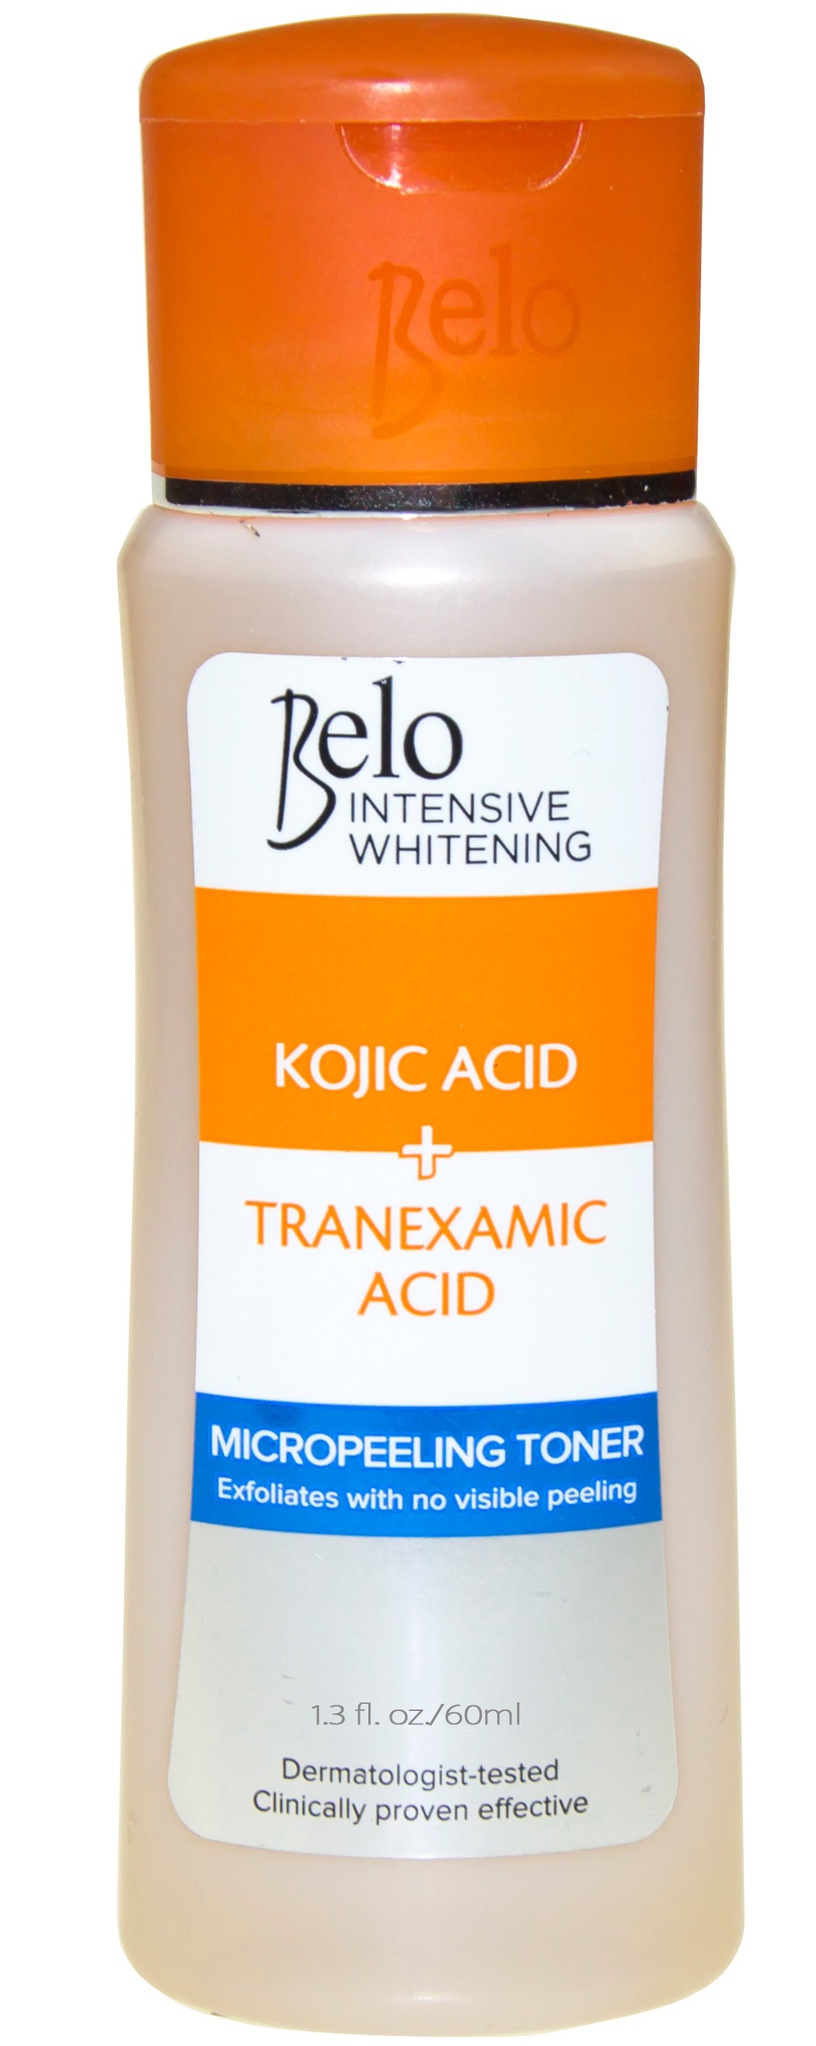 Belo Intensive Whitening Kojic Acid + Tranexamic Acid Micropeeling Toner (2022)